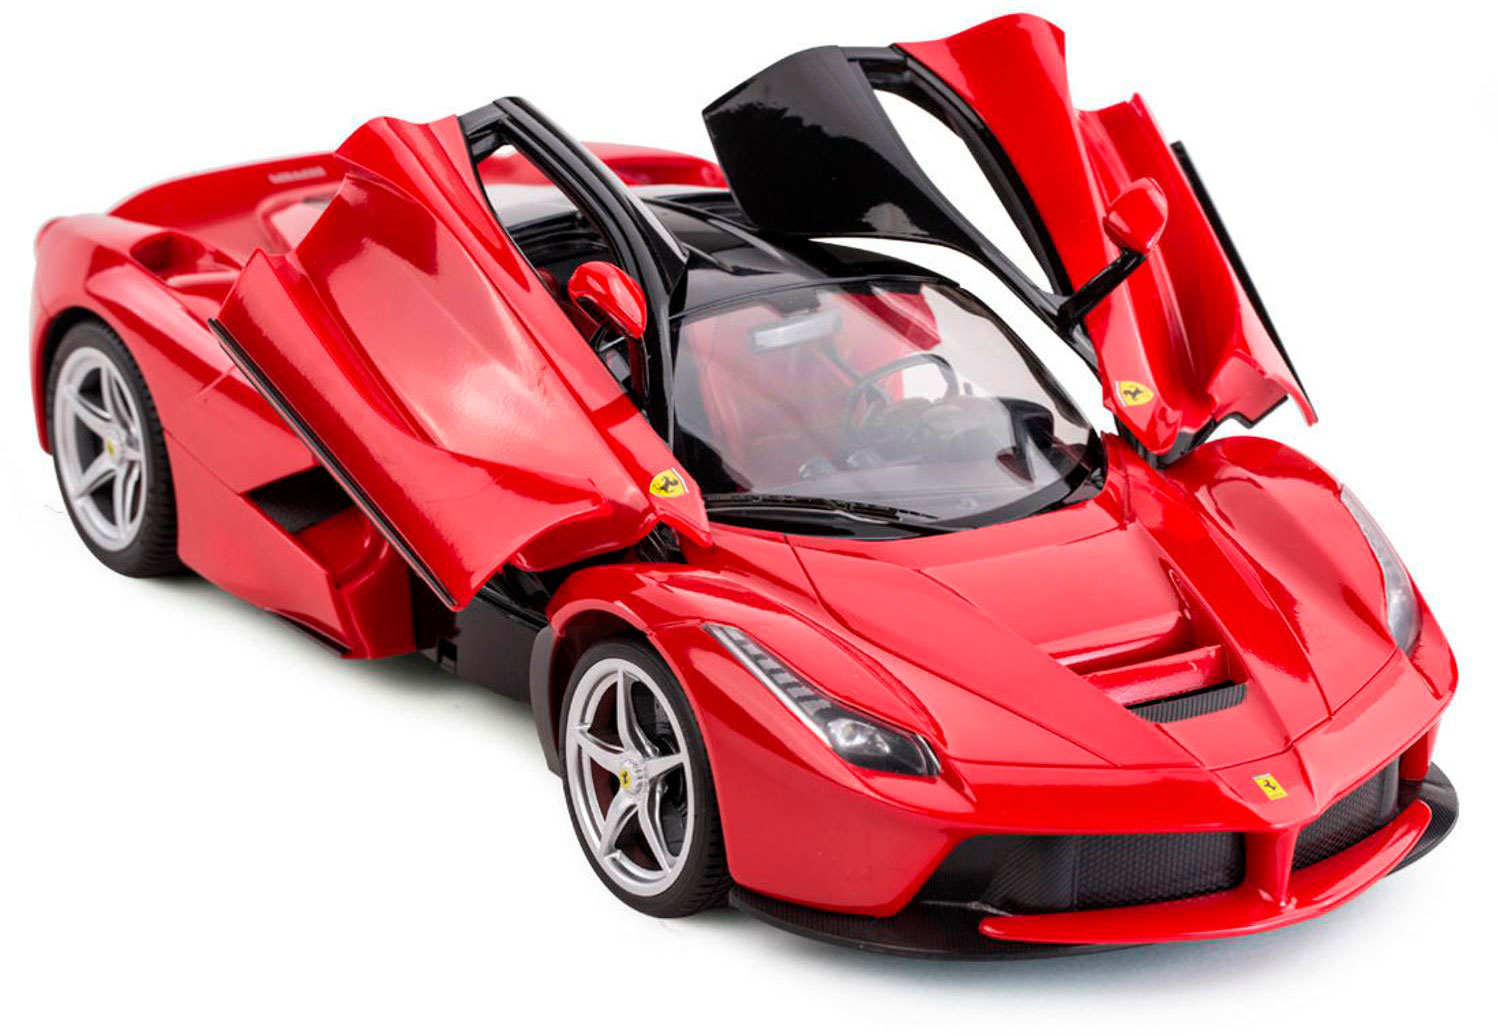 Красная машинка 1. Машинка р/у Rastar Ferrari LAFERRARI 1:14 красная. Ferrari LAFERRARI на радиоуправлении. Легковой автомобиль Rastar Ferrari LAFERRARI (50100) 1:14 34 см. Ferrari LAFERRARI моделька.